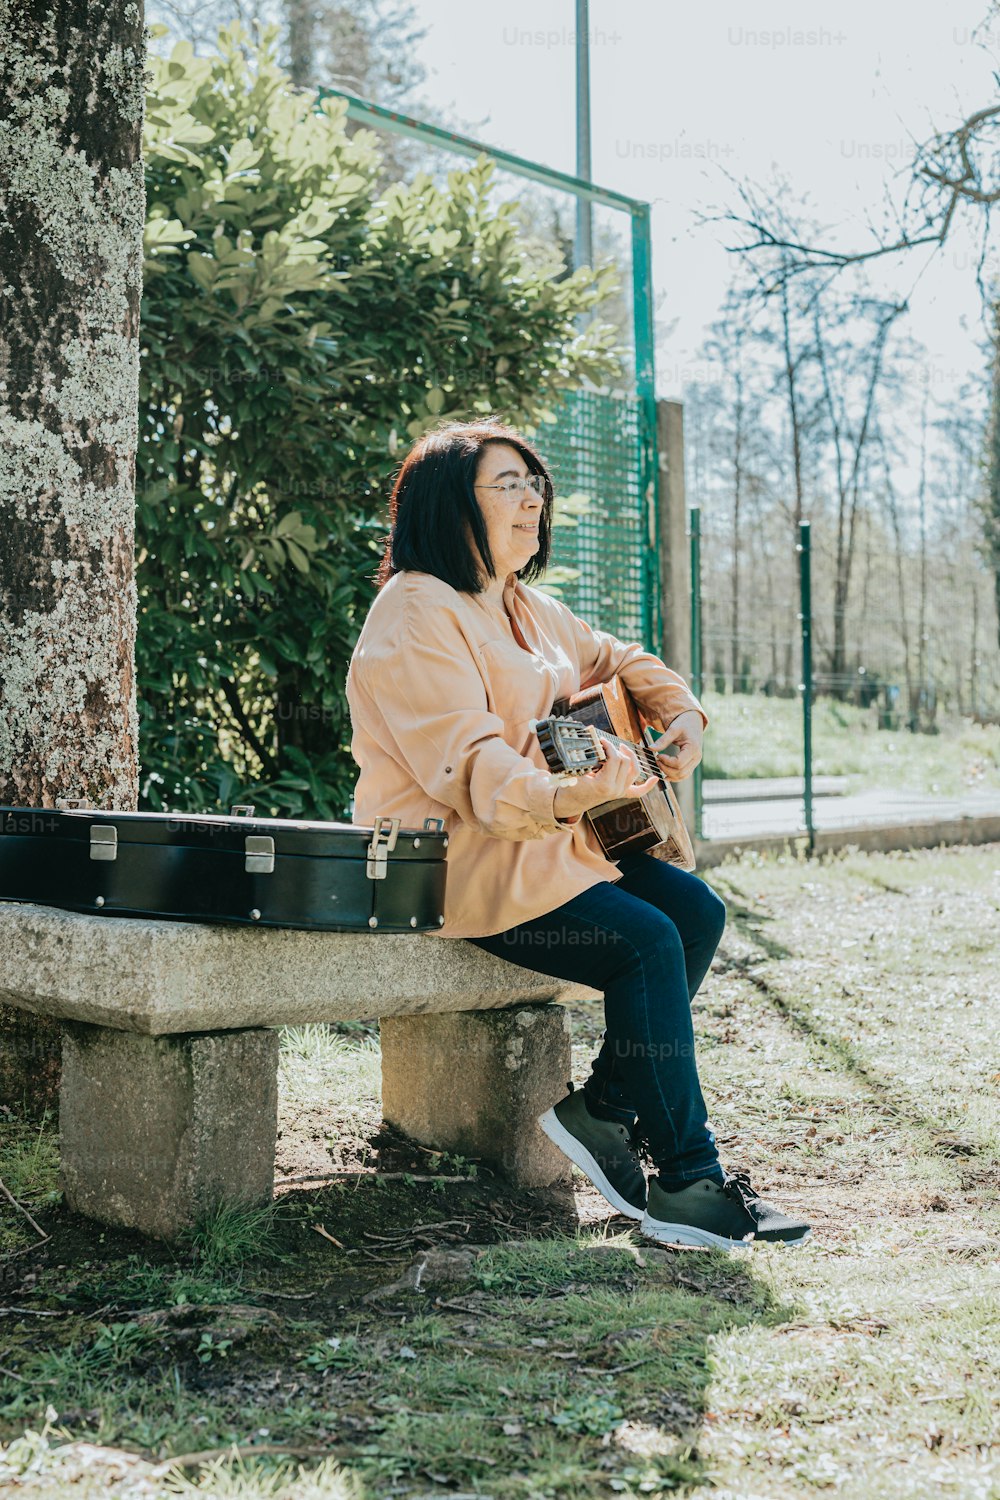 Une femme assise sur un banc de ciment tenant une guitare